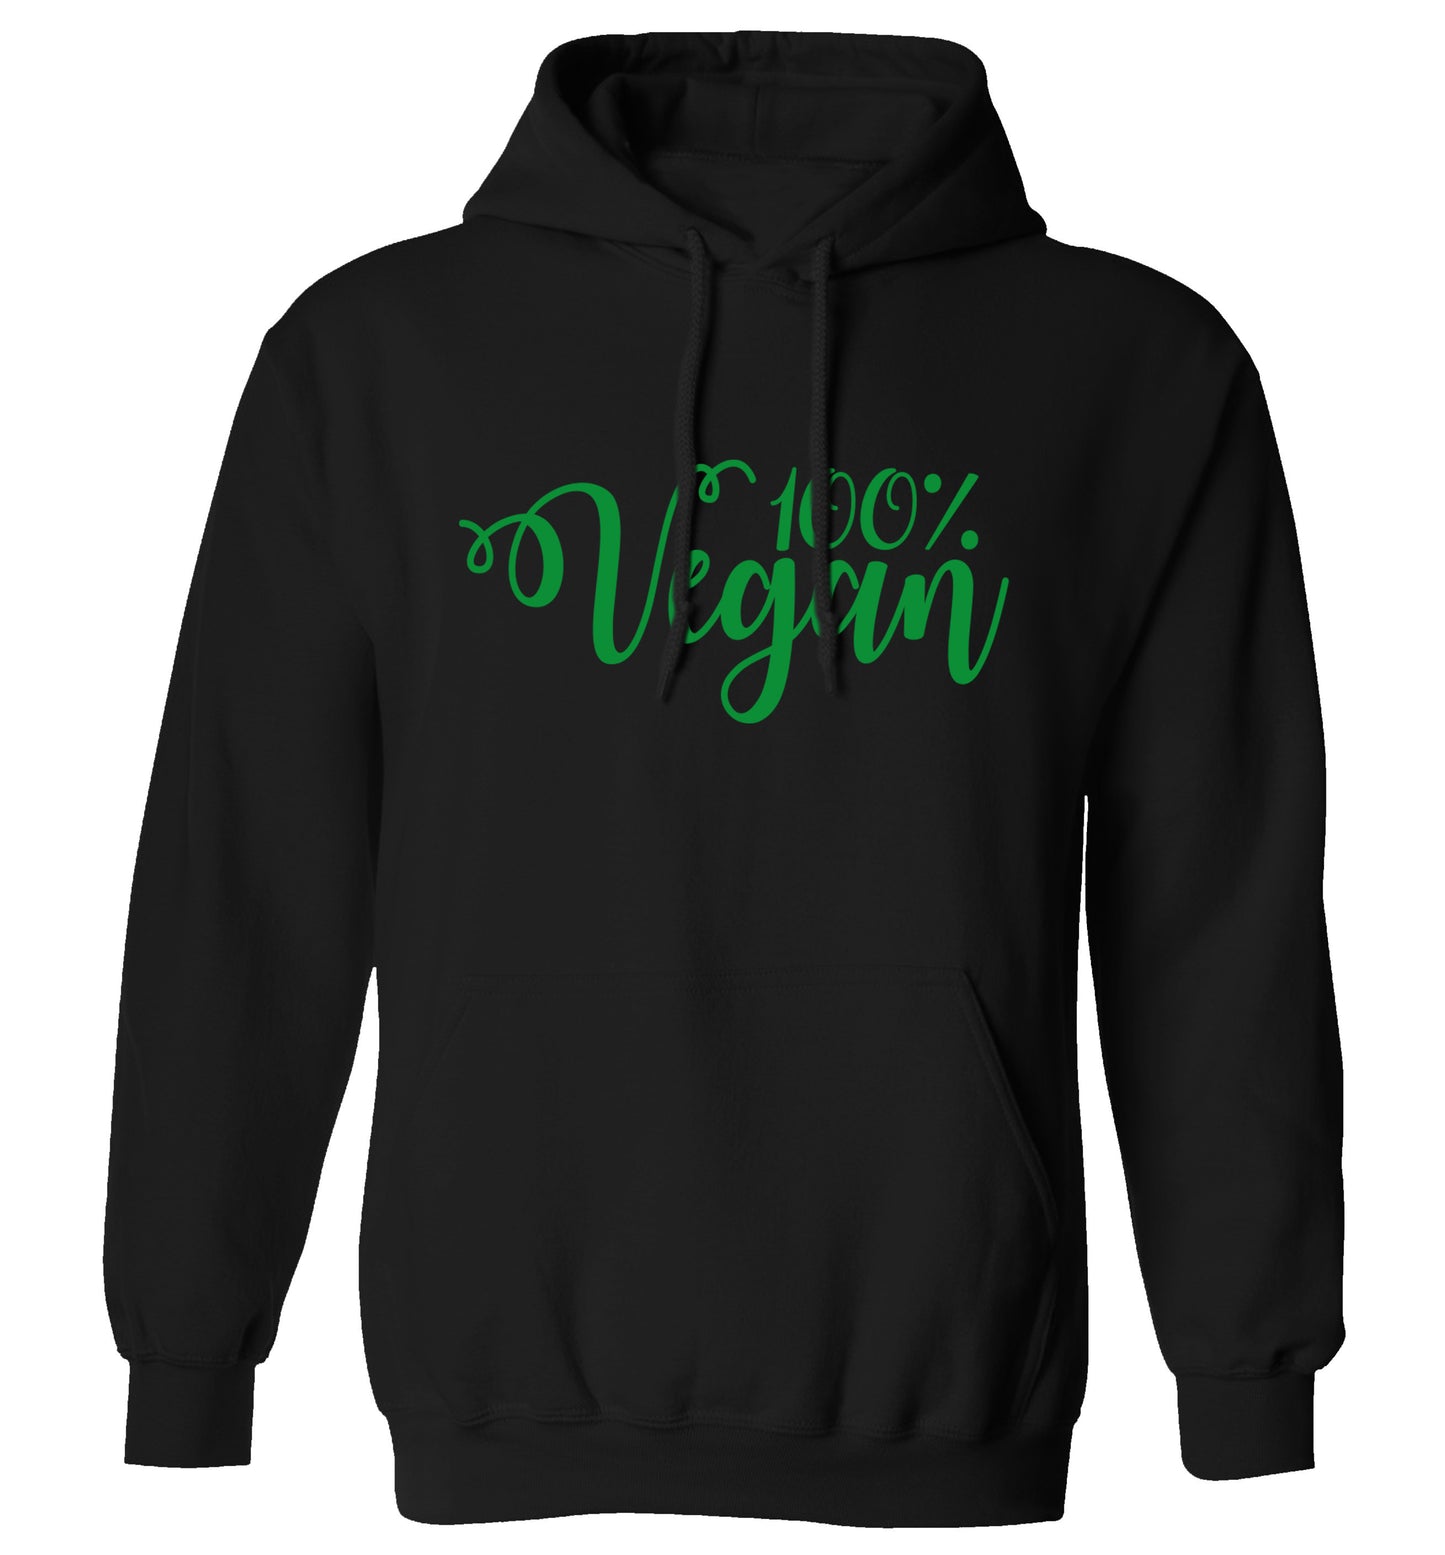 100% Vegan adults unisex black hoodie 2XL